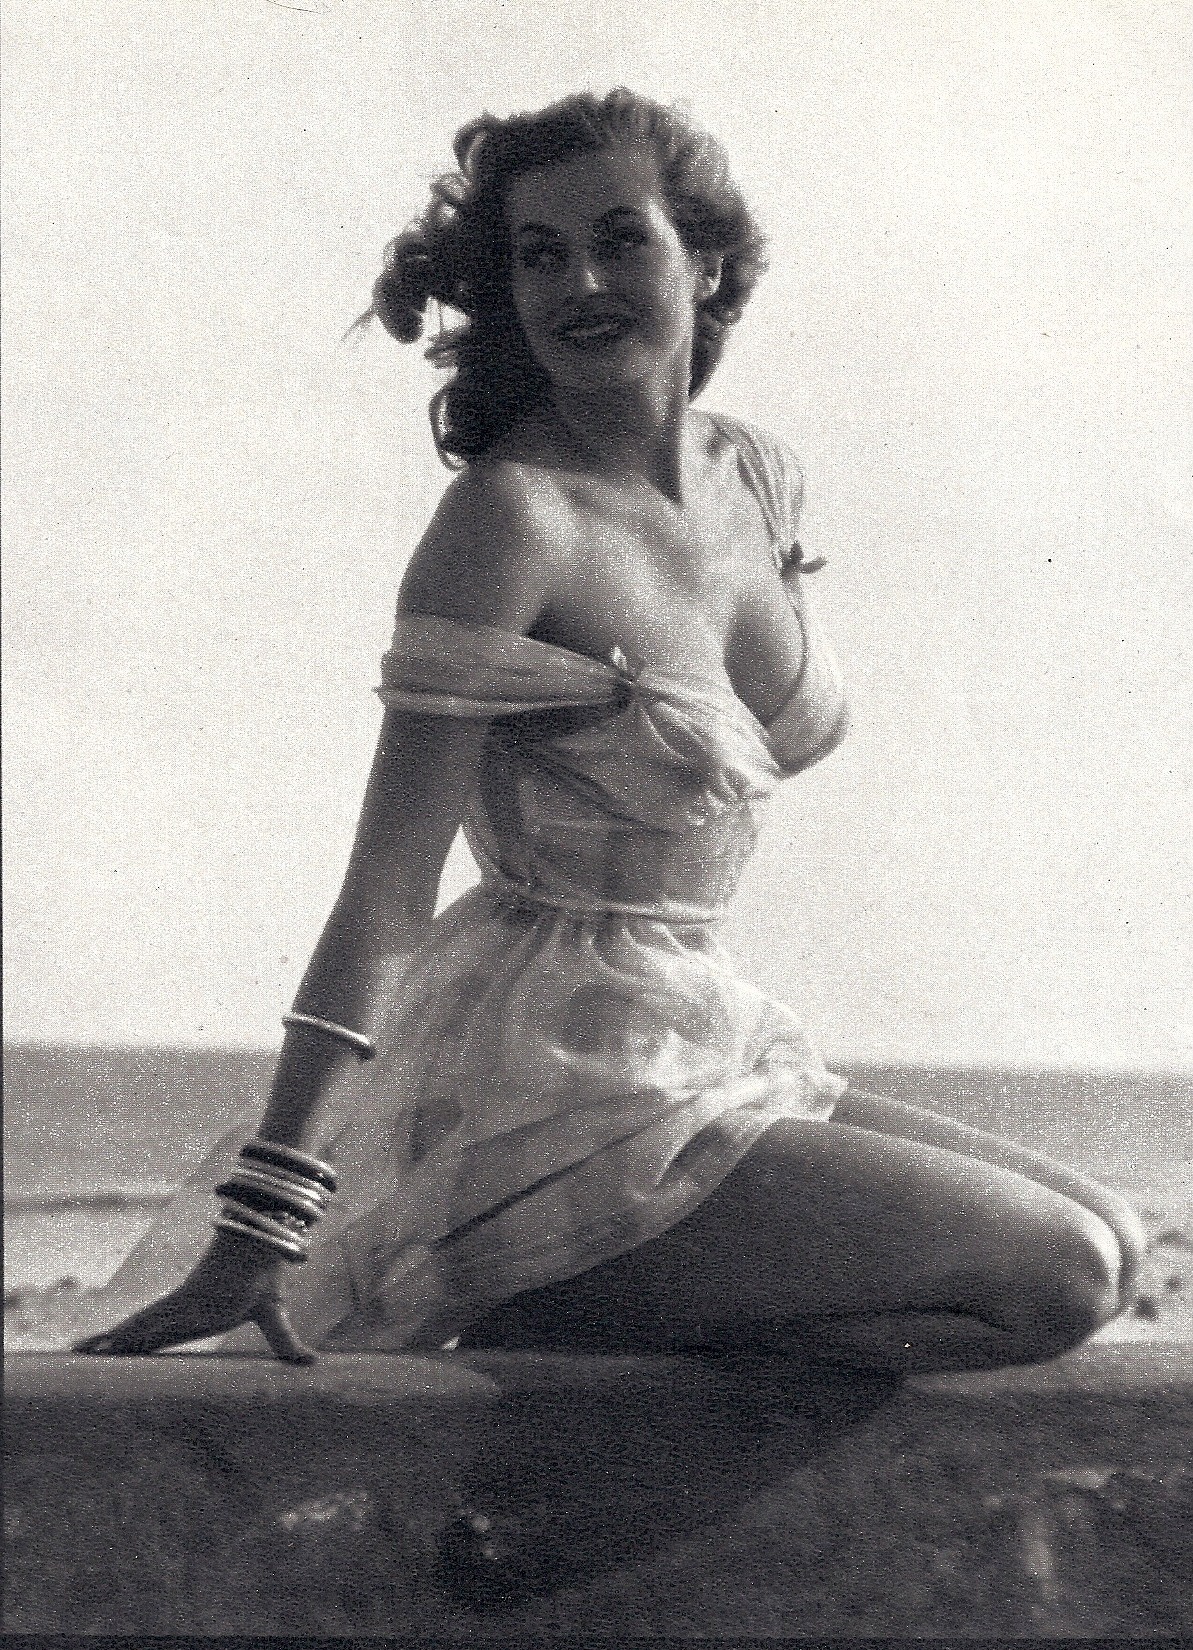 Anita Ekberg, Nugget - June 1957